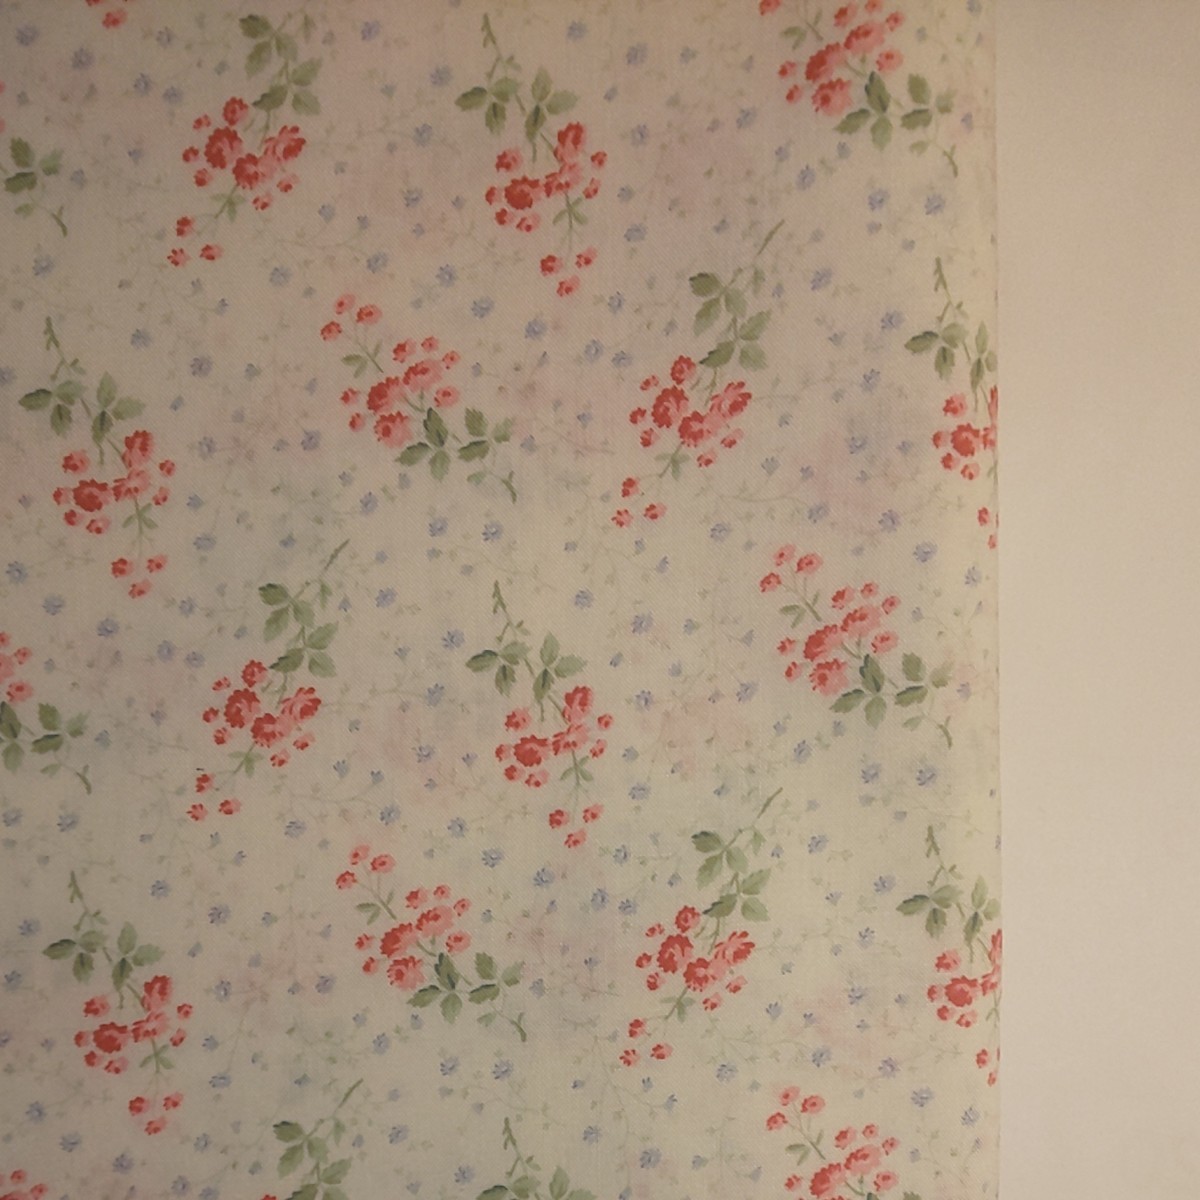 【現品のみ】YUWA シャーティング生地 花柄 ピンク×ブルー 生地巾約108cm×約50cm